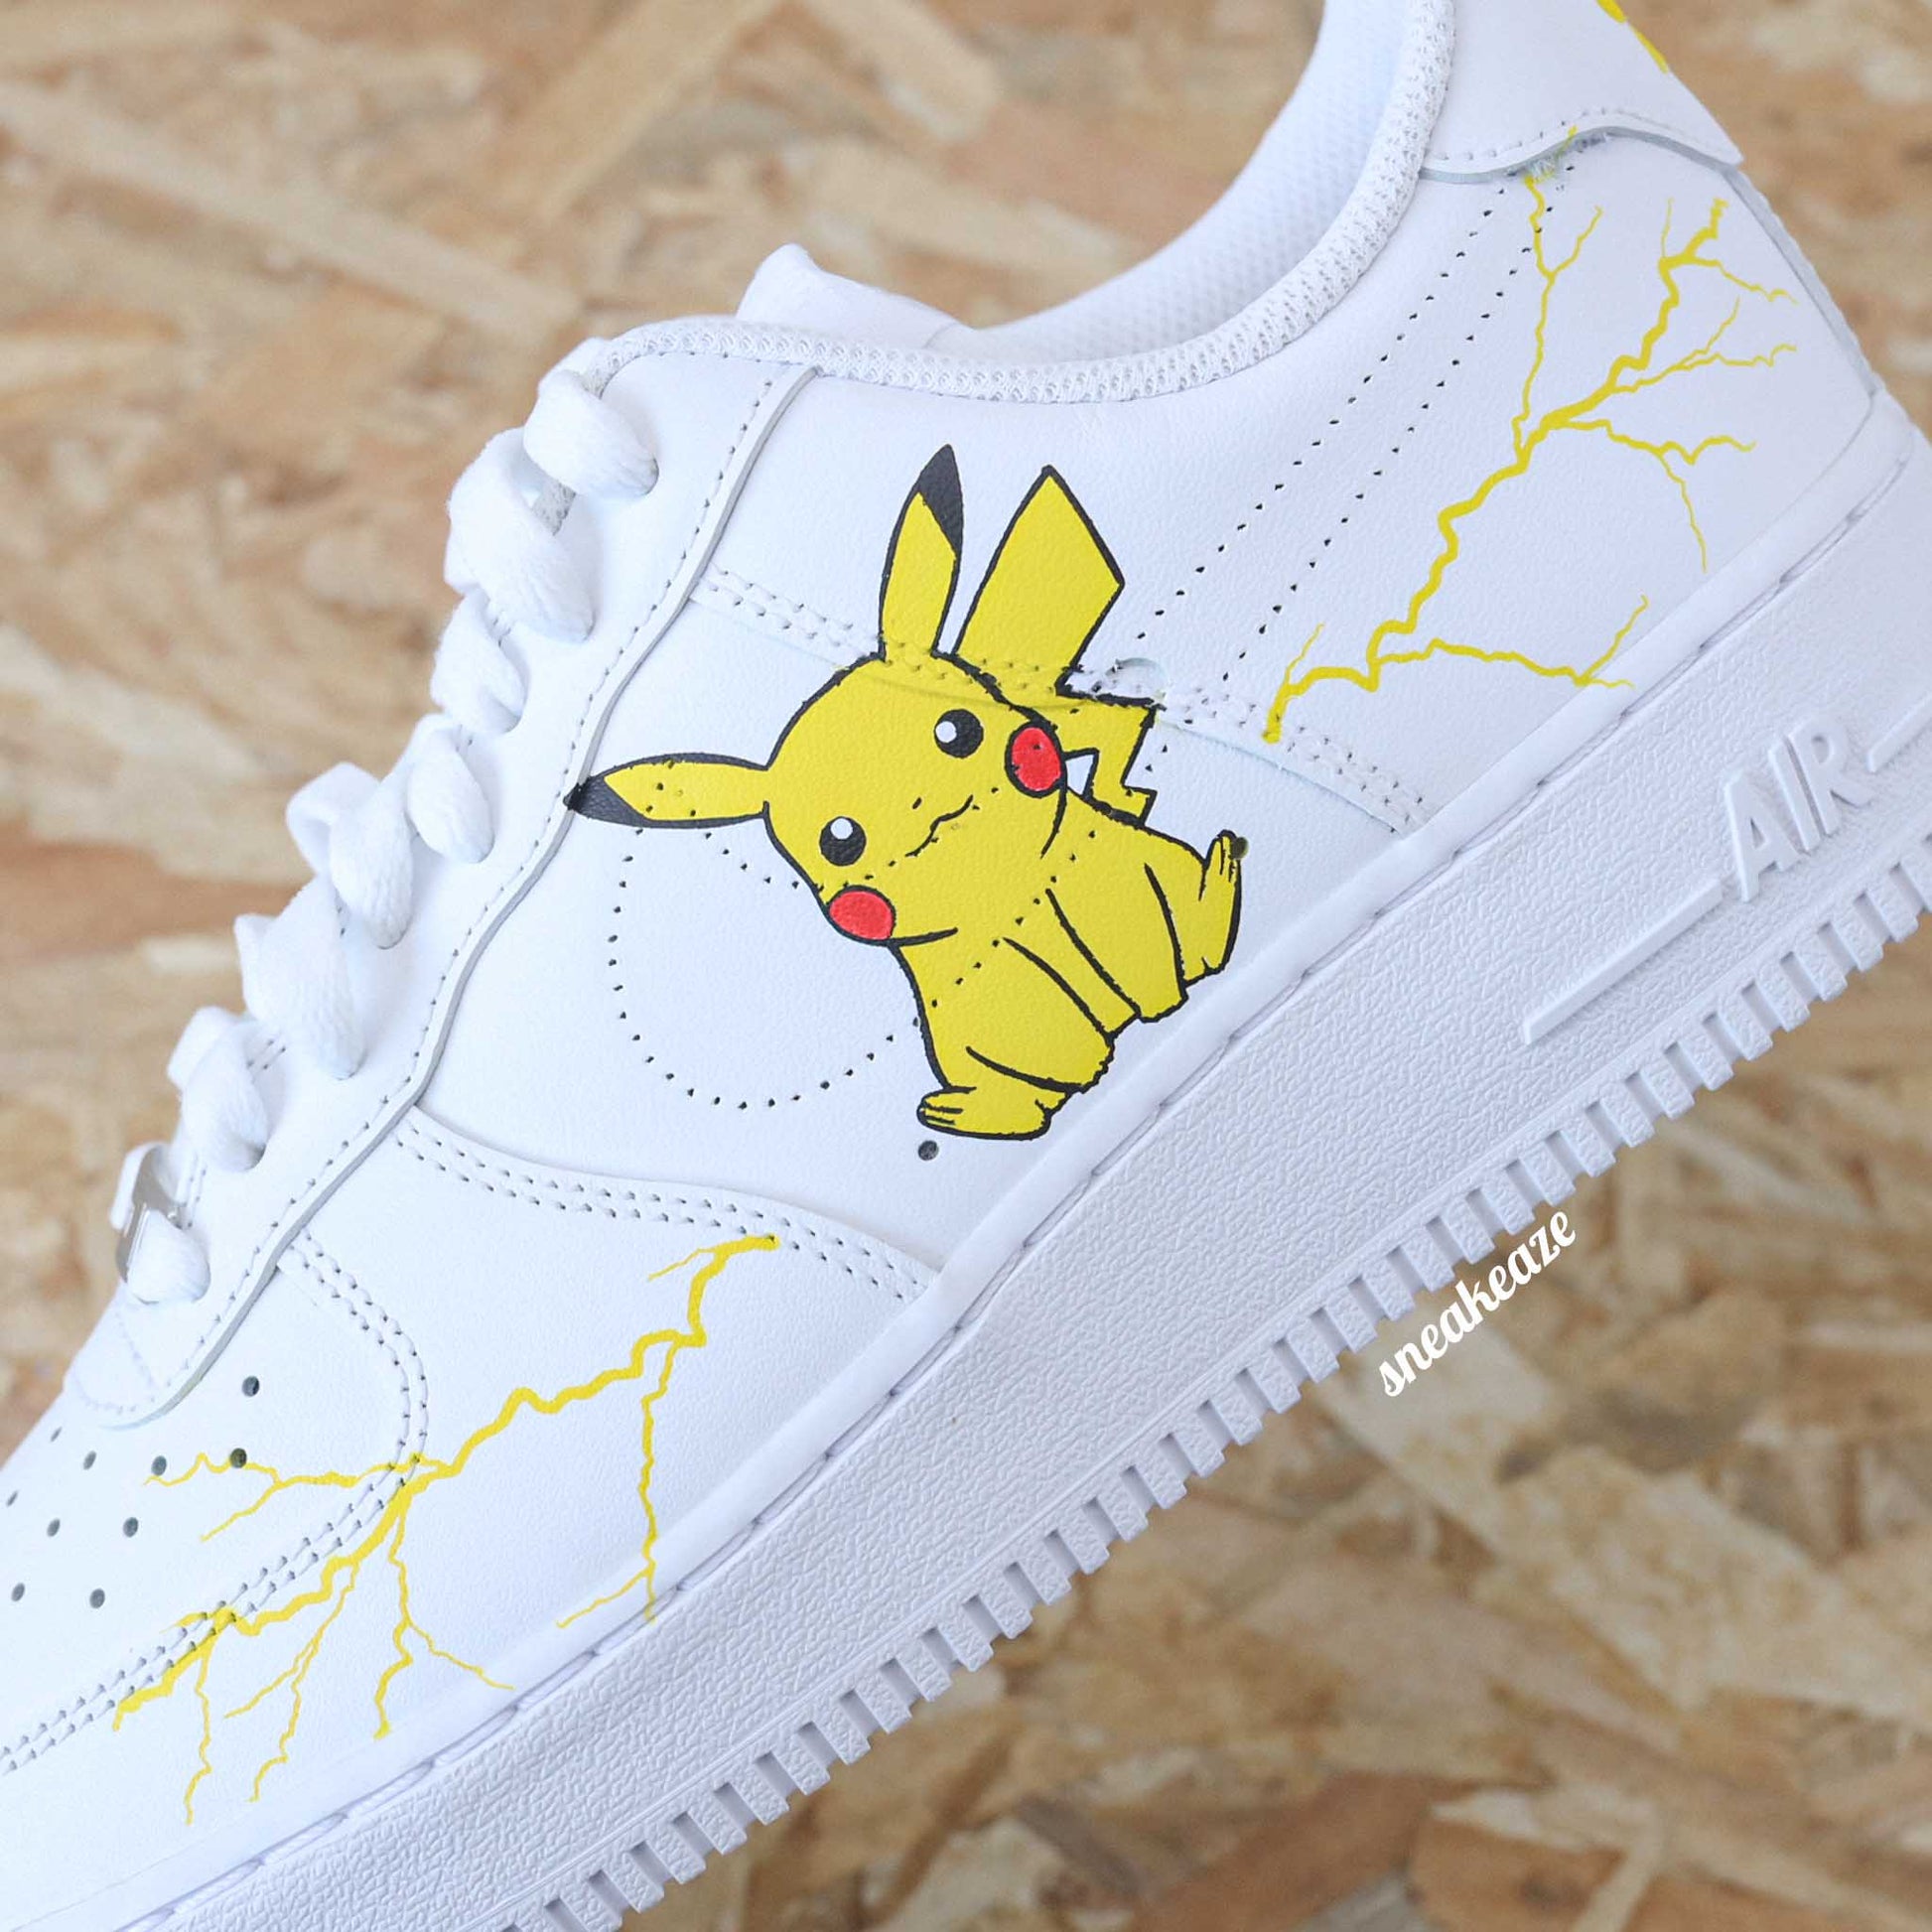 Baskets Nike Air force 1 custom pikachu pokemon sneakers dessin sneakeaze customs skz AF1